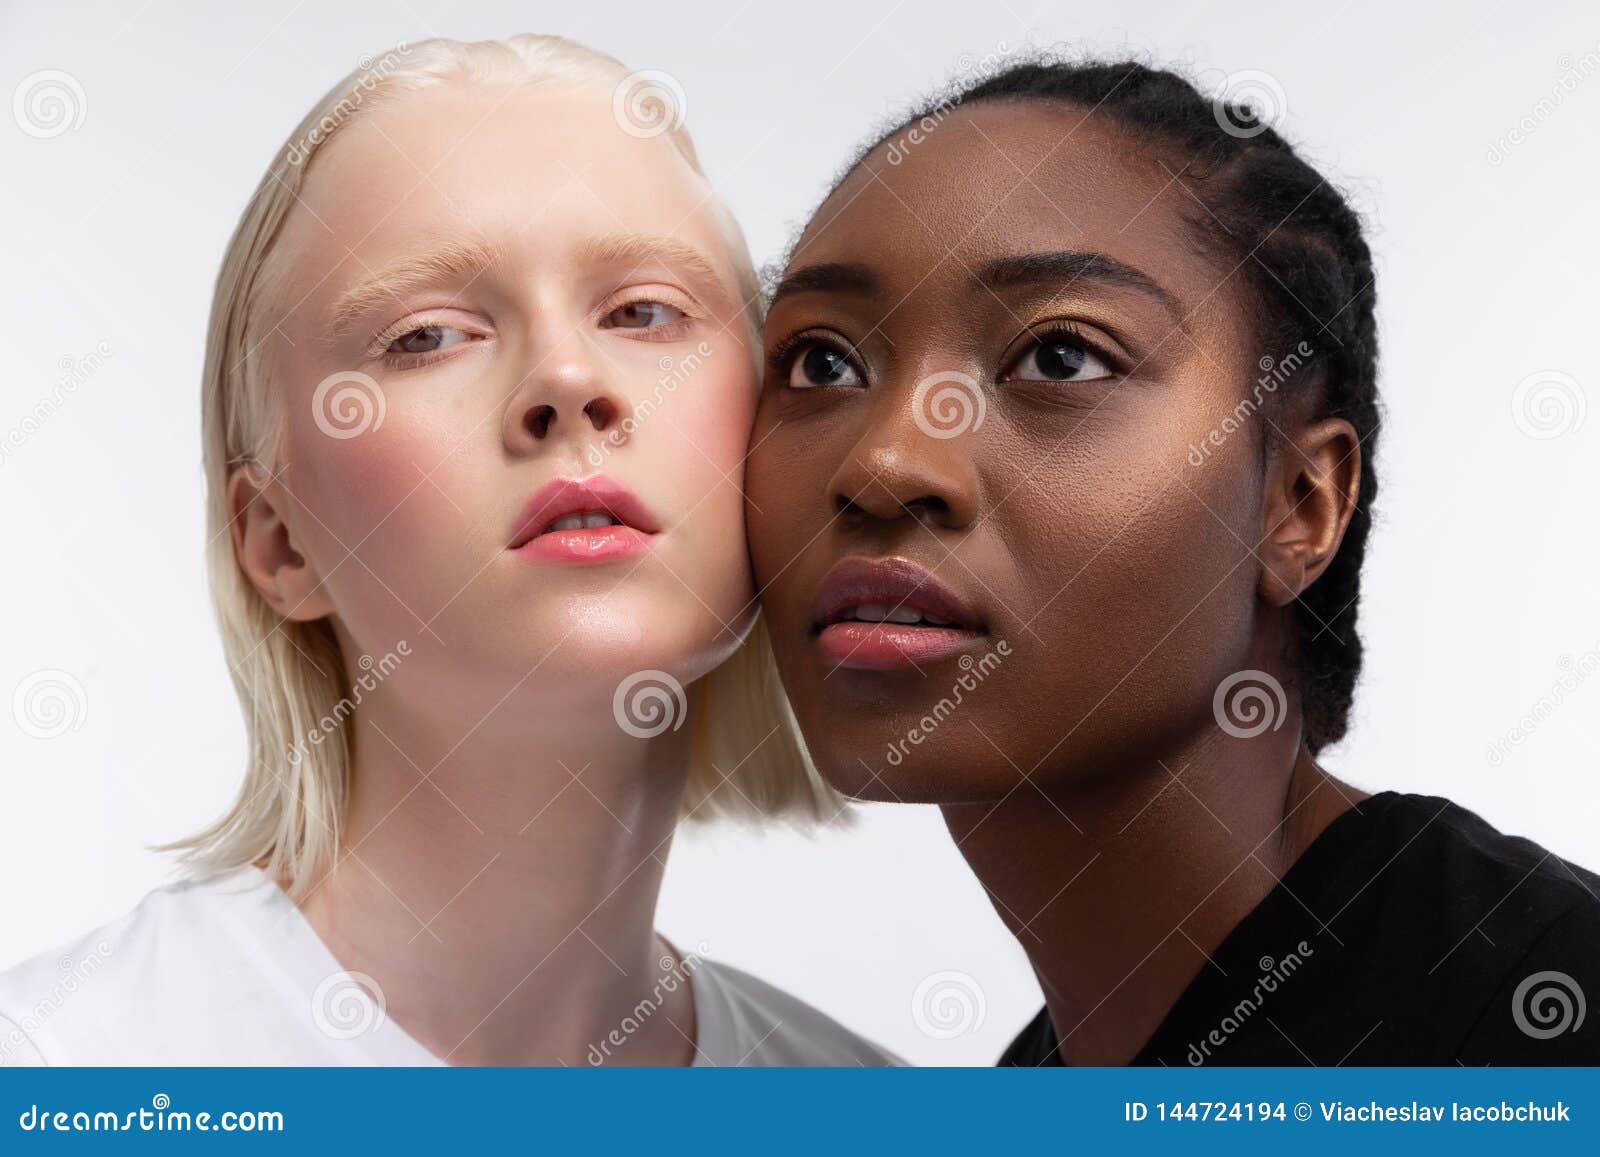 女性面部的美丽及脸上白色完美和干净的皮肤图片下载 - 觅知网